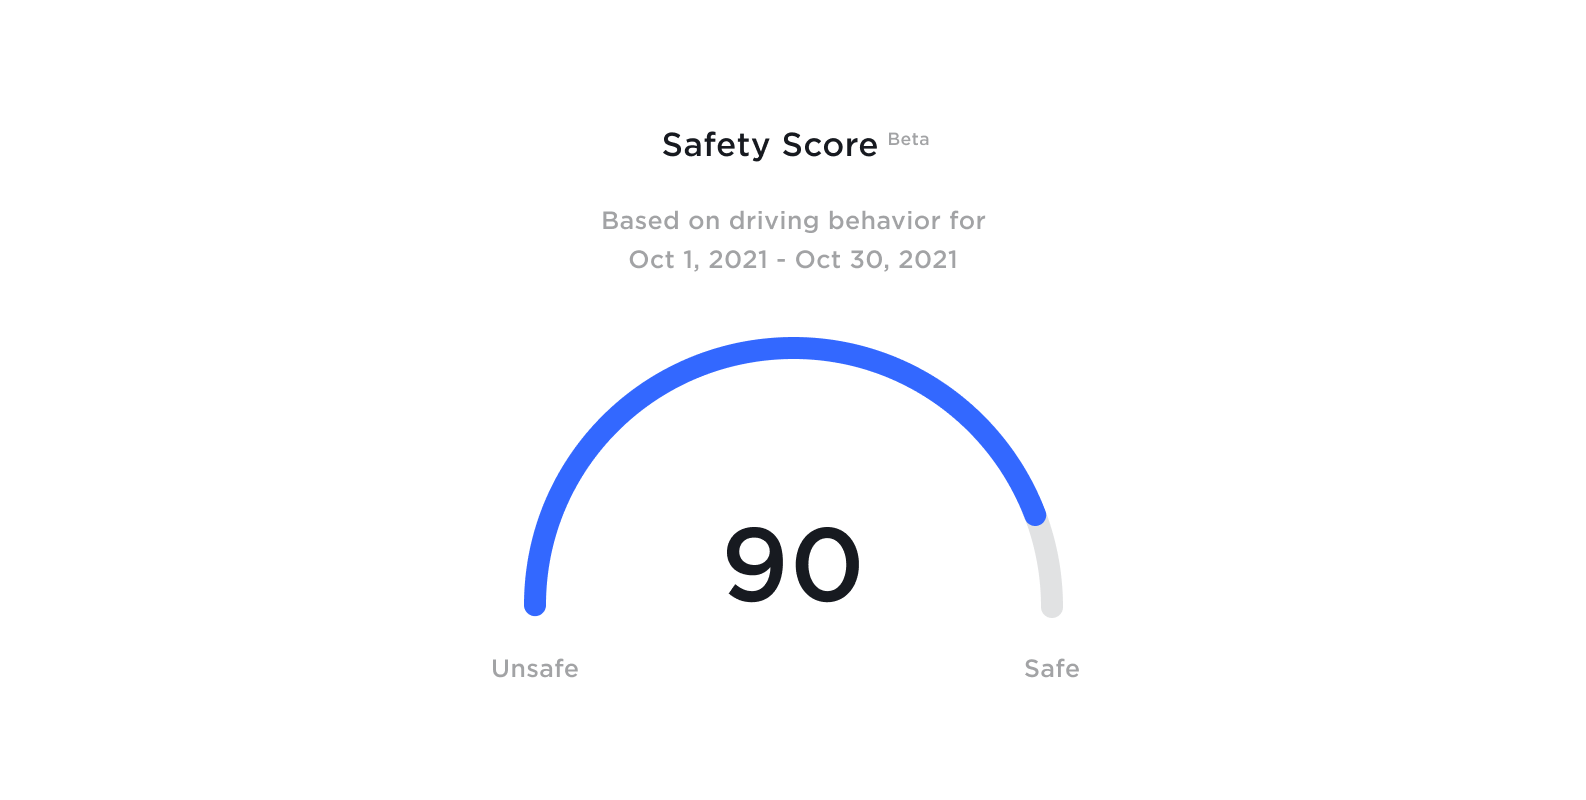 Tesla's Safety Score